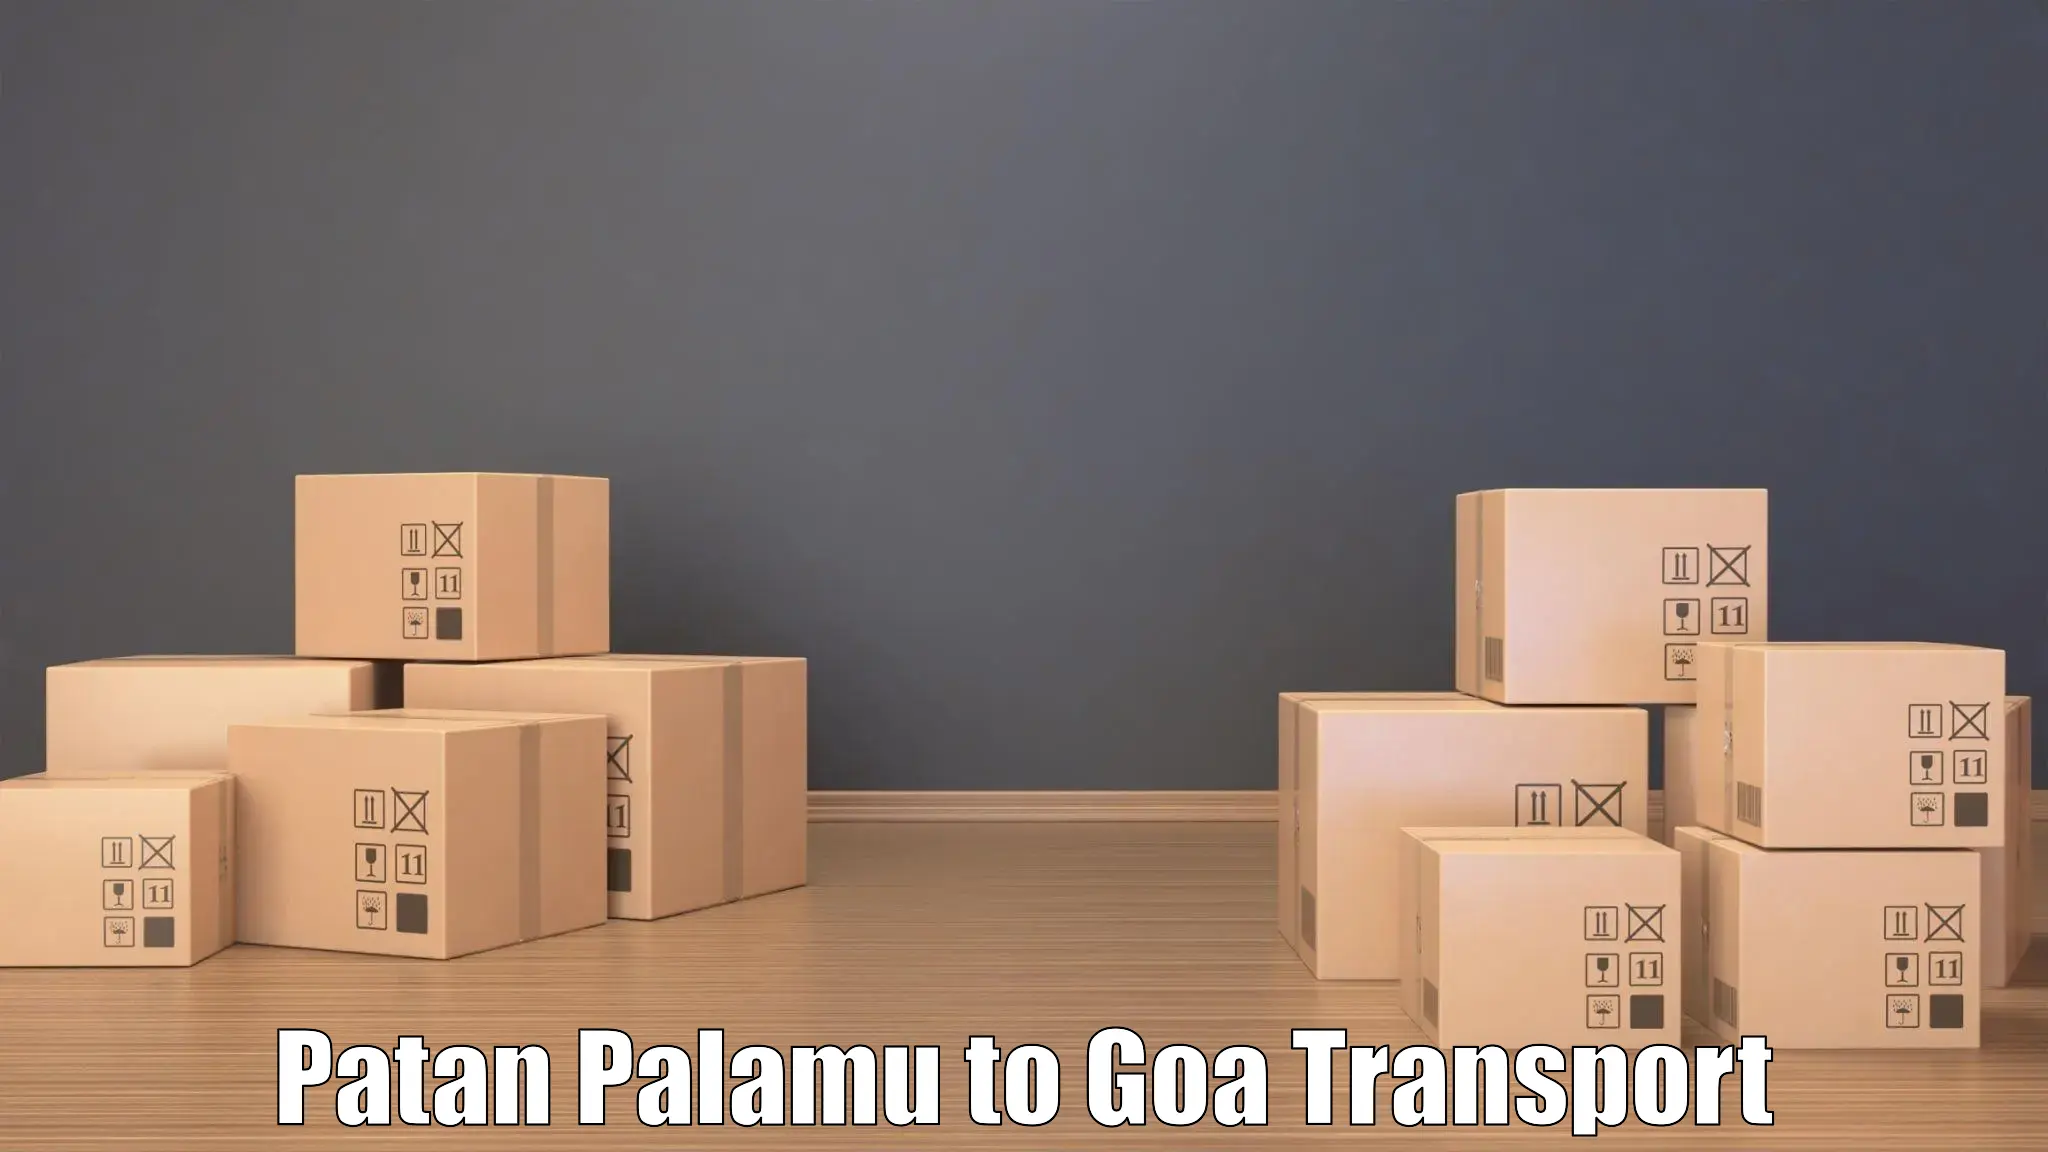 Nearby transport service Patan Palamu to Bicholim